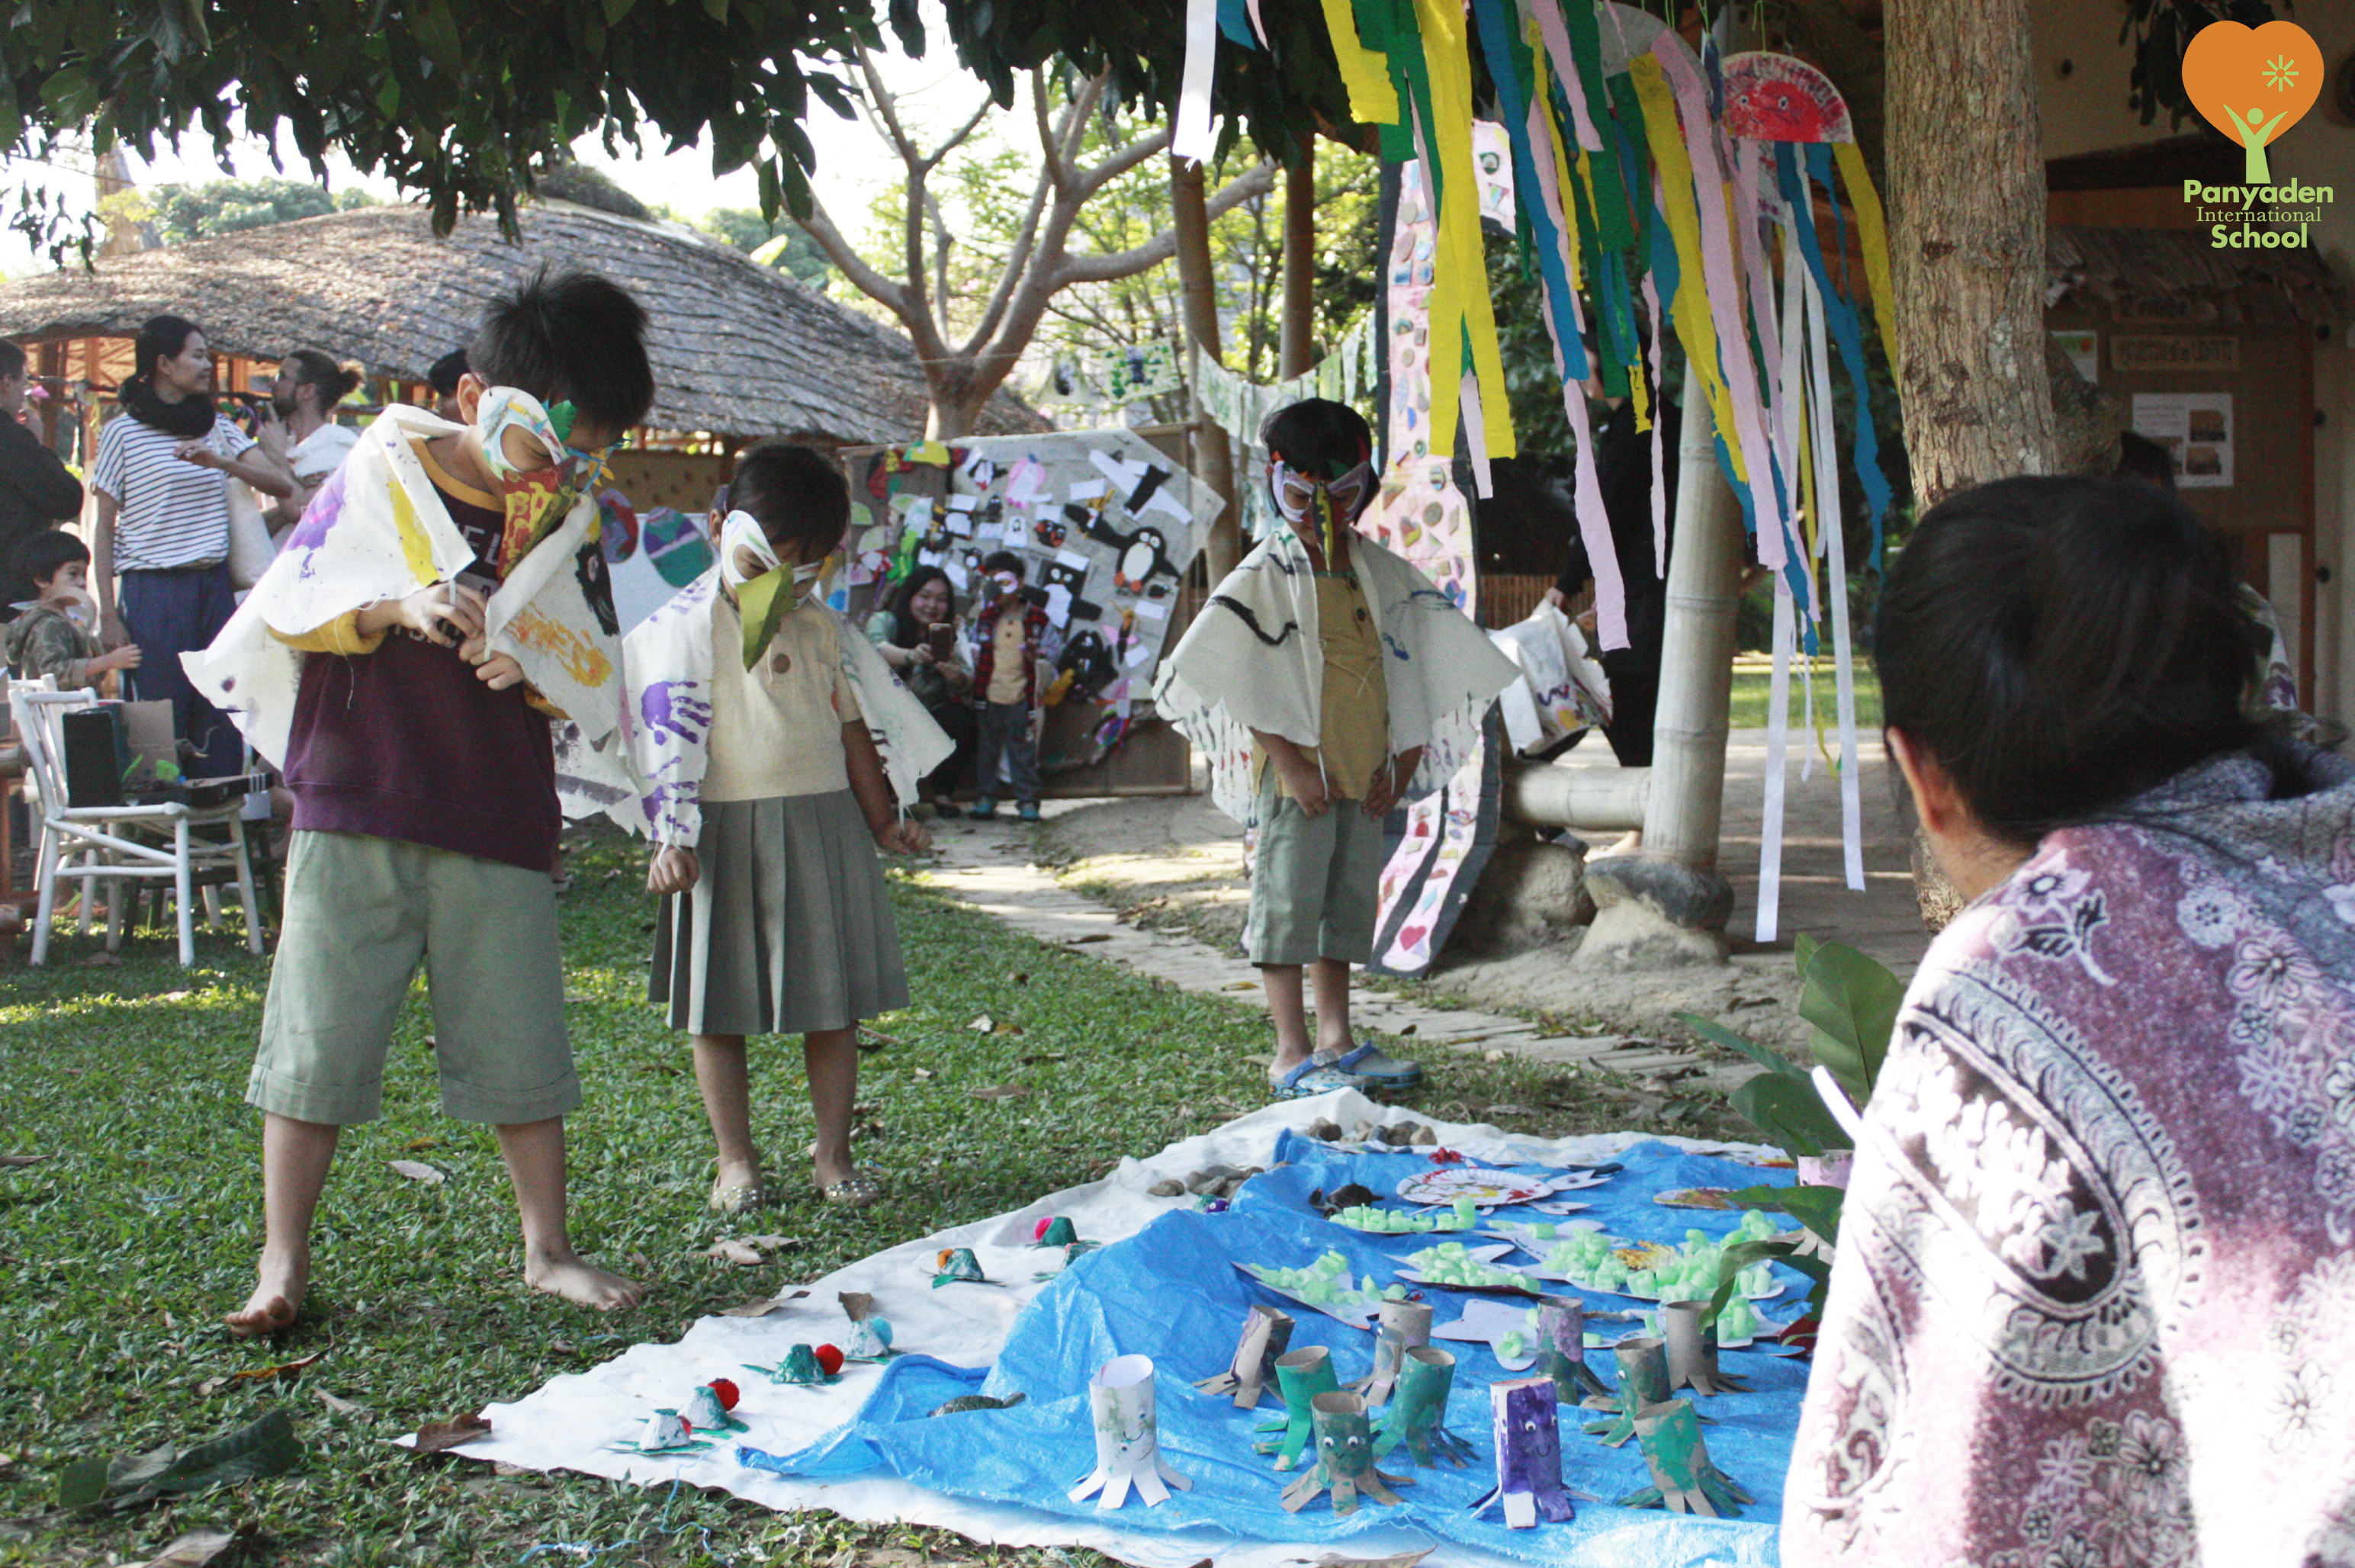 Panyaden pre-schoolers in bird costumes admiring an animal art art exhibition